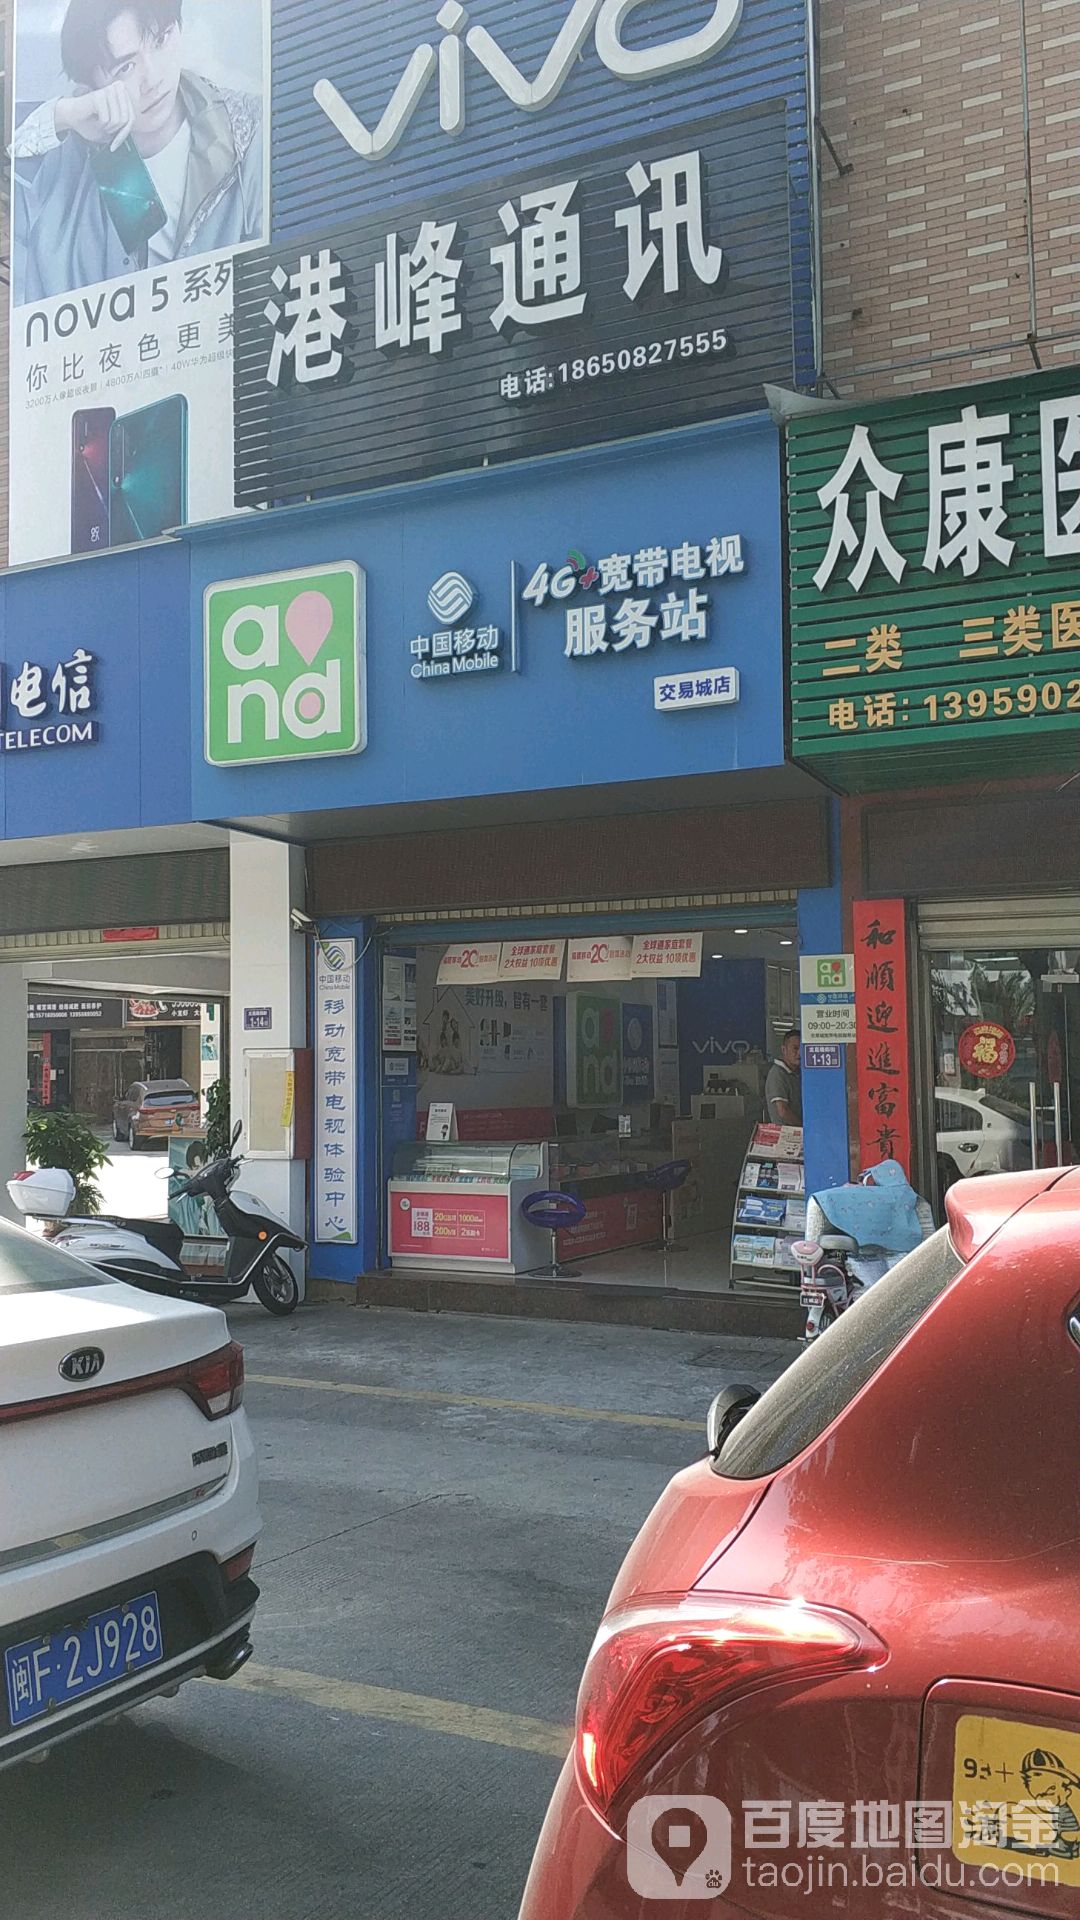 中國移動4G+寬帶電視服務站(交易城店)